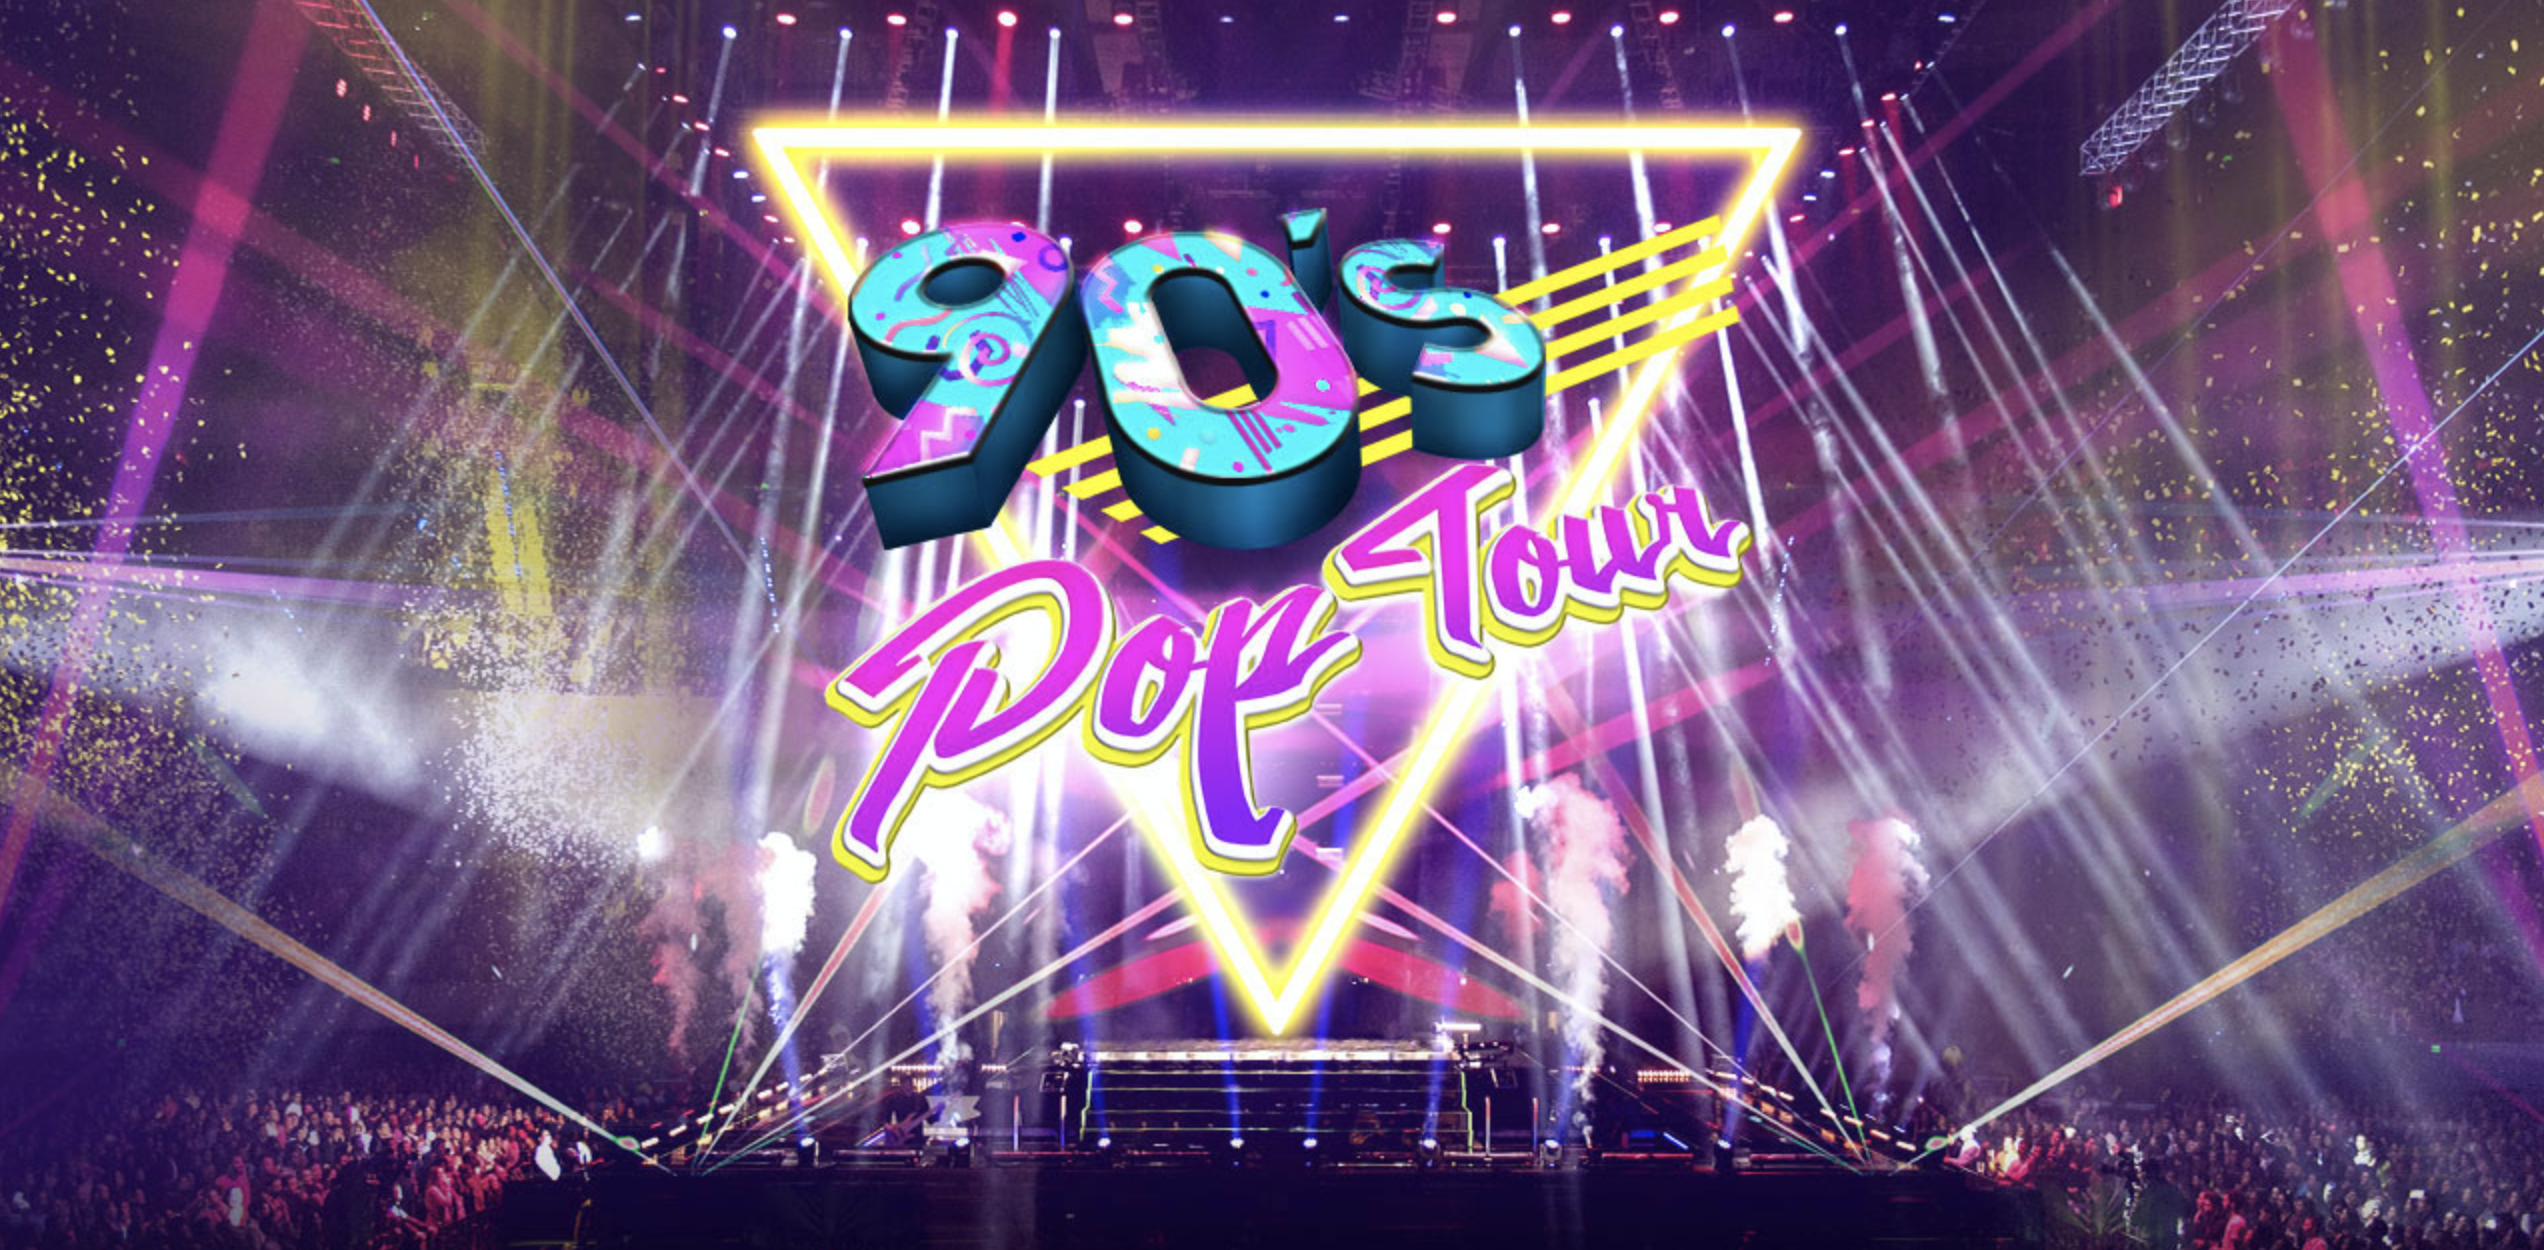 90s pop tour lineup